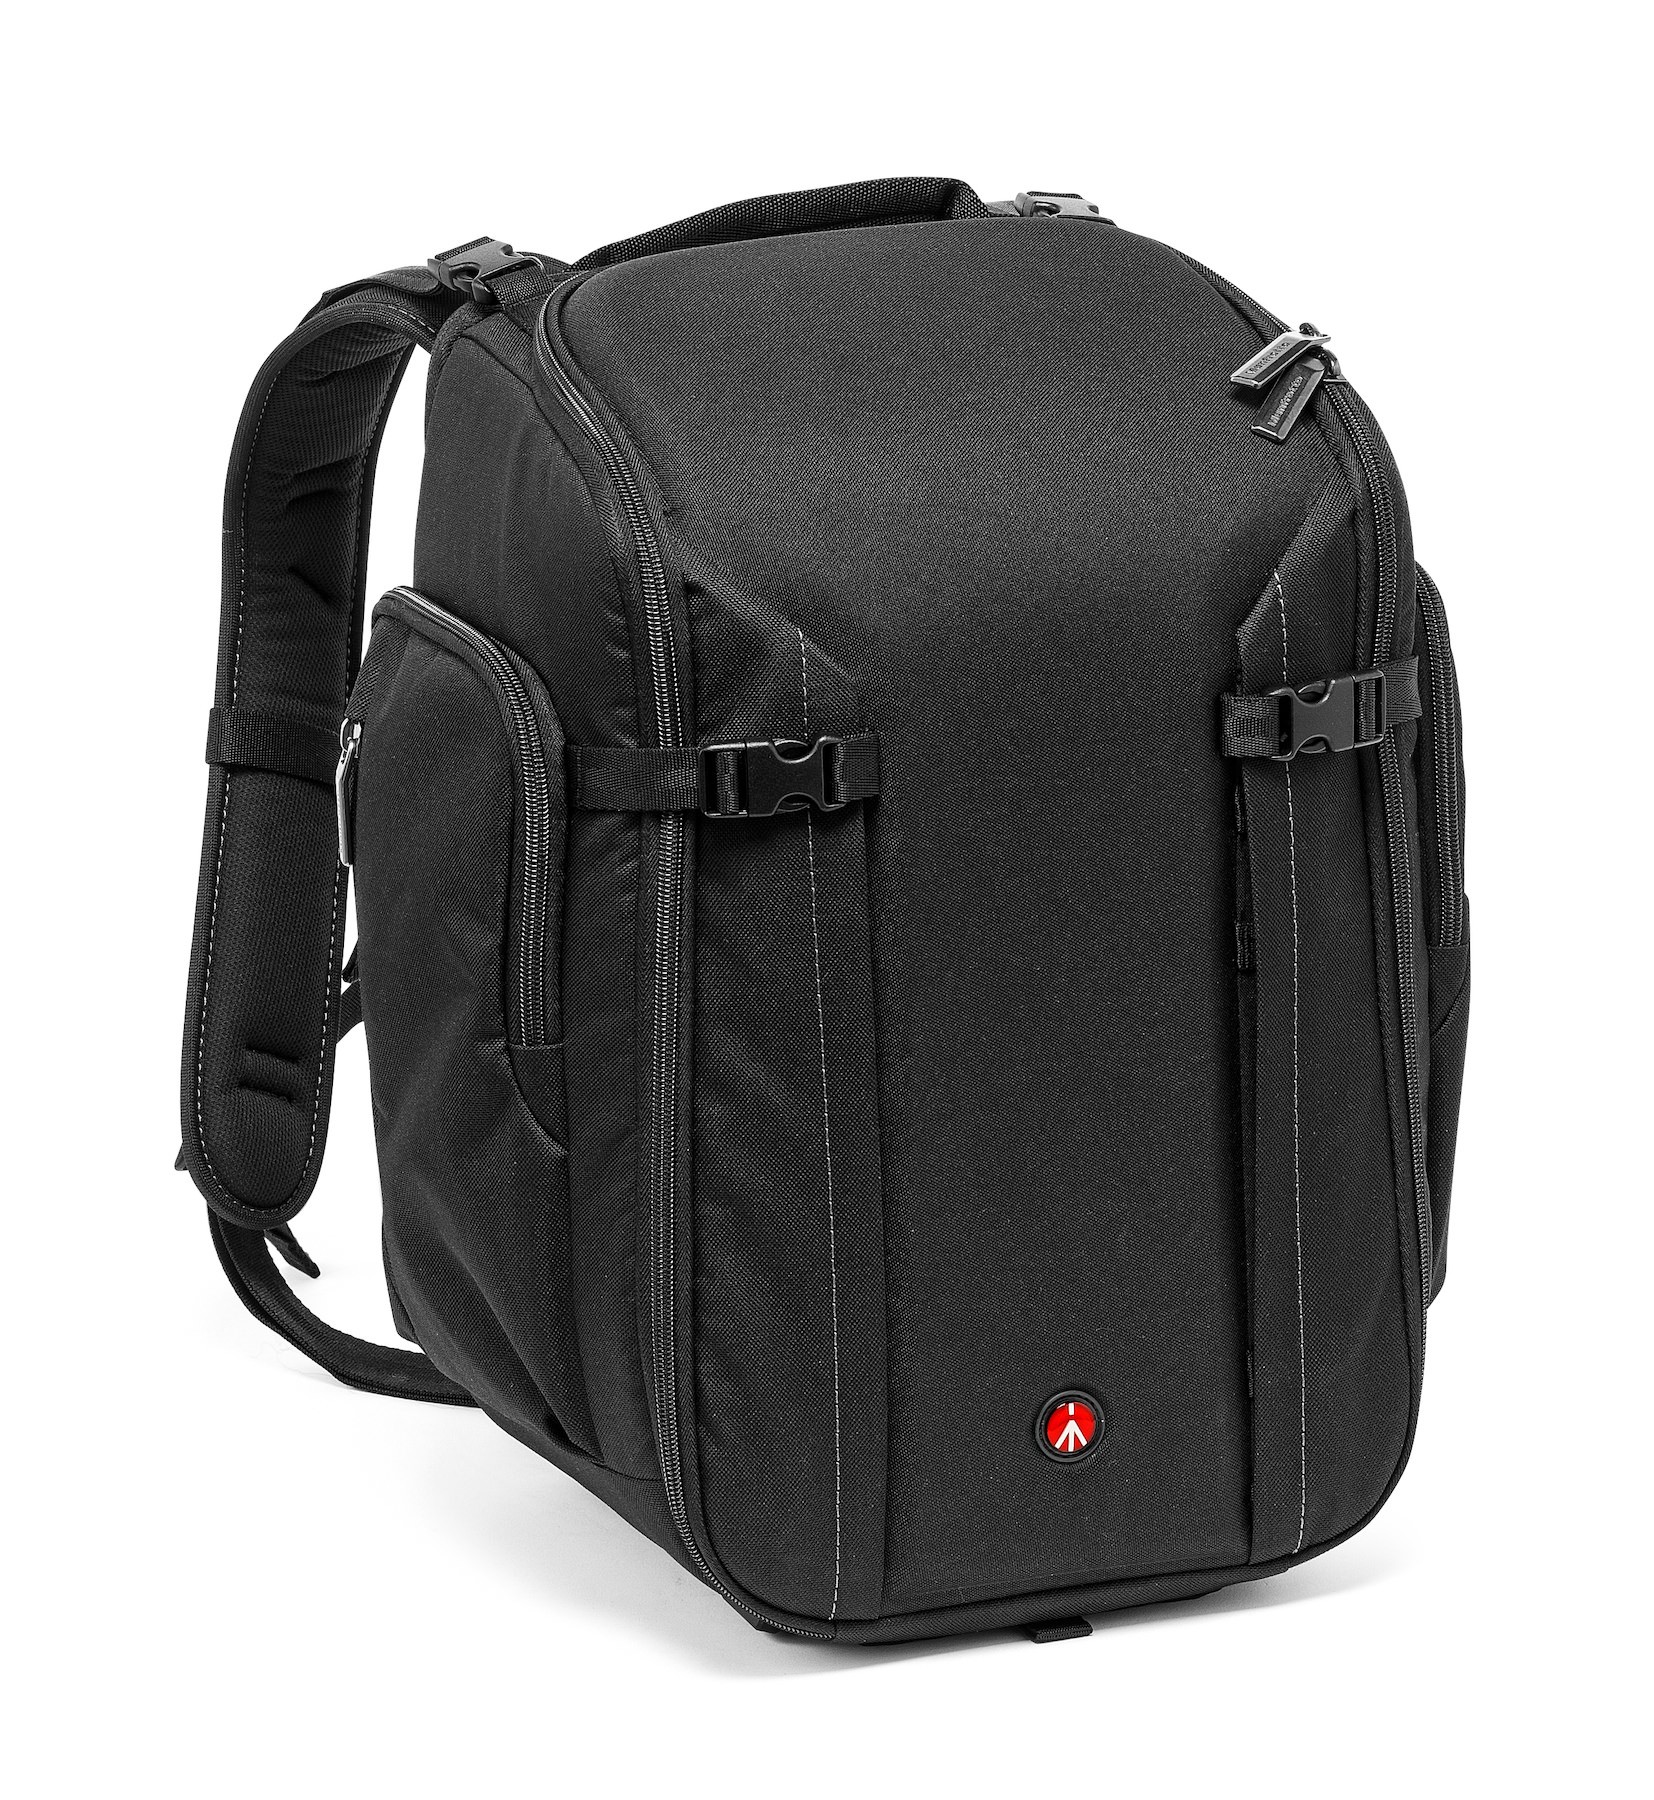 Professional camera backpack for DSLR/camcorder